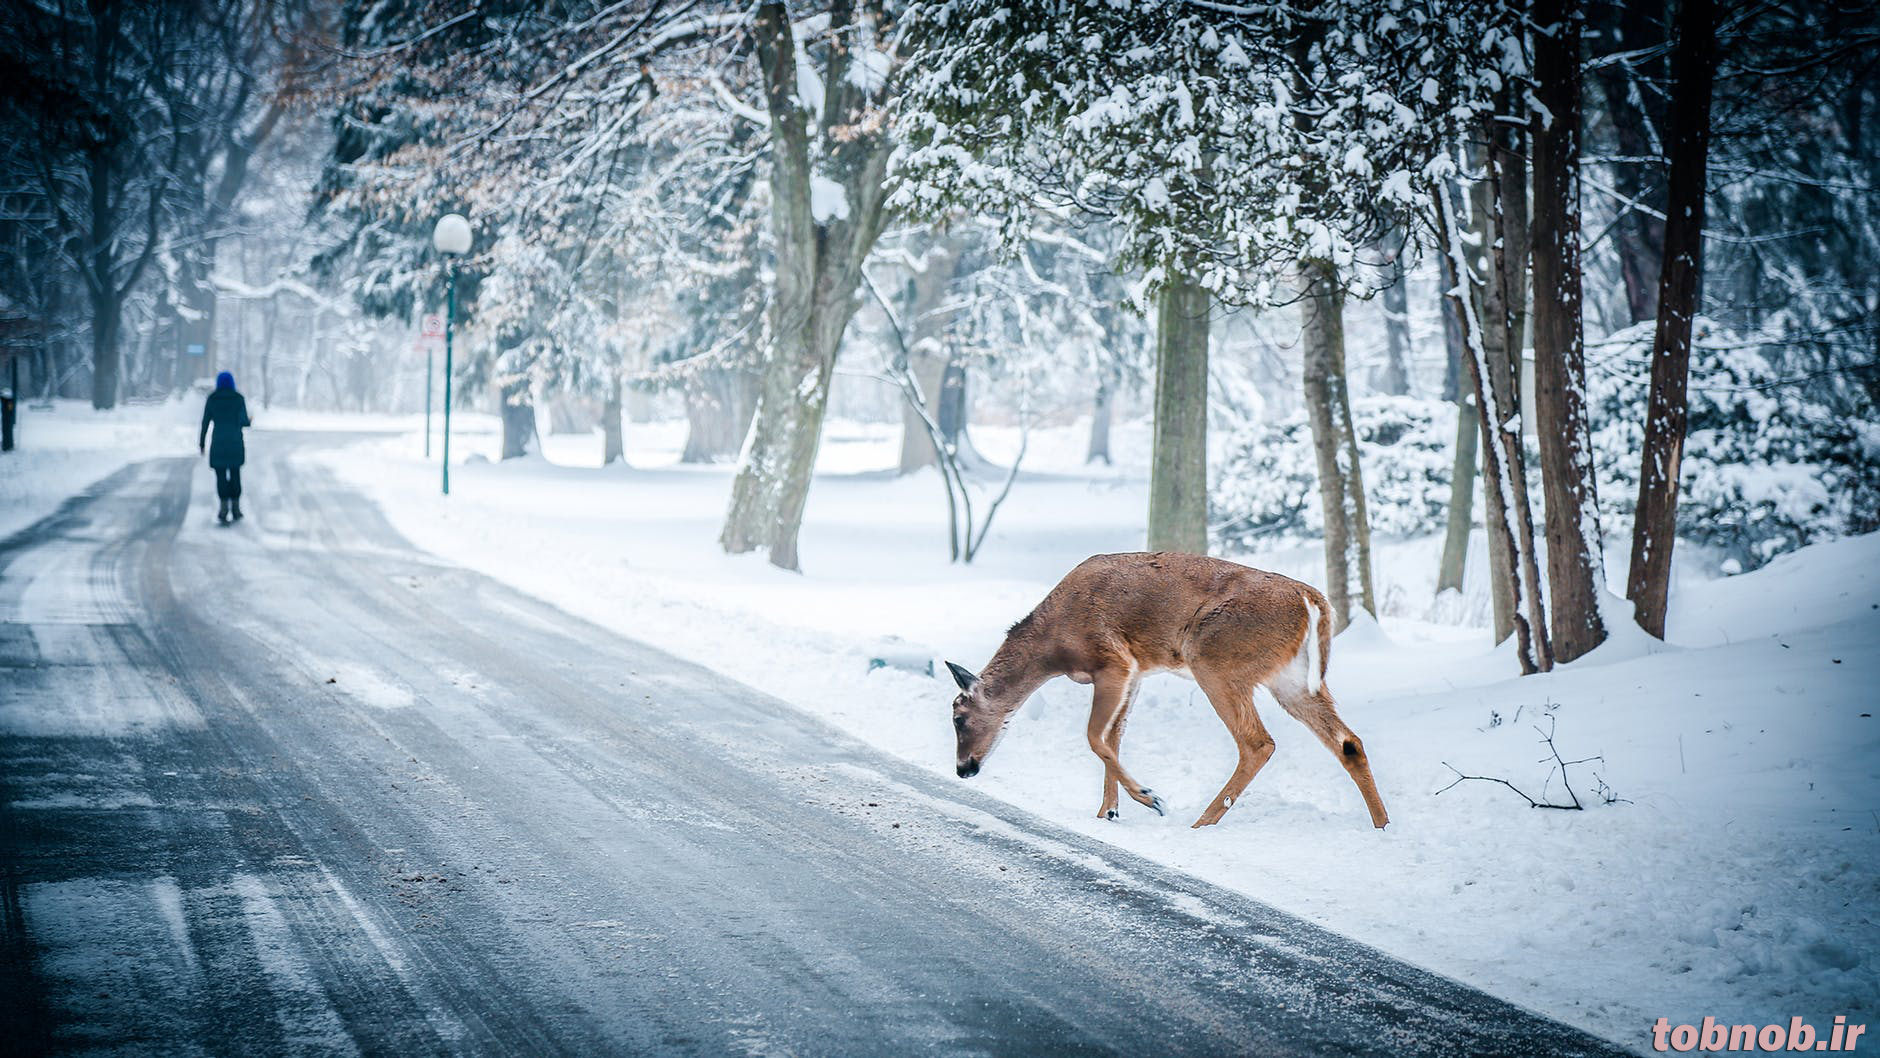 ejd9_snow-winter-christmas-deer.png